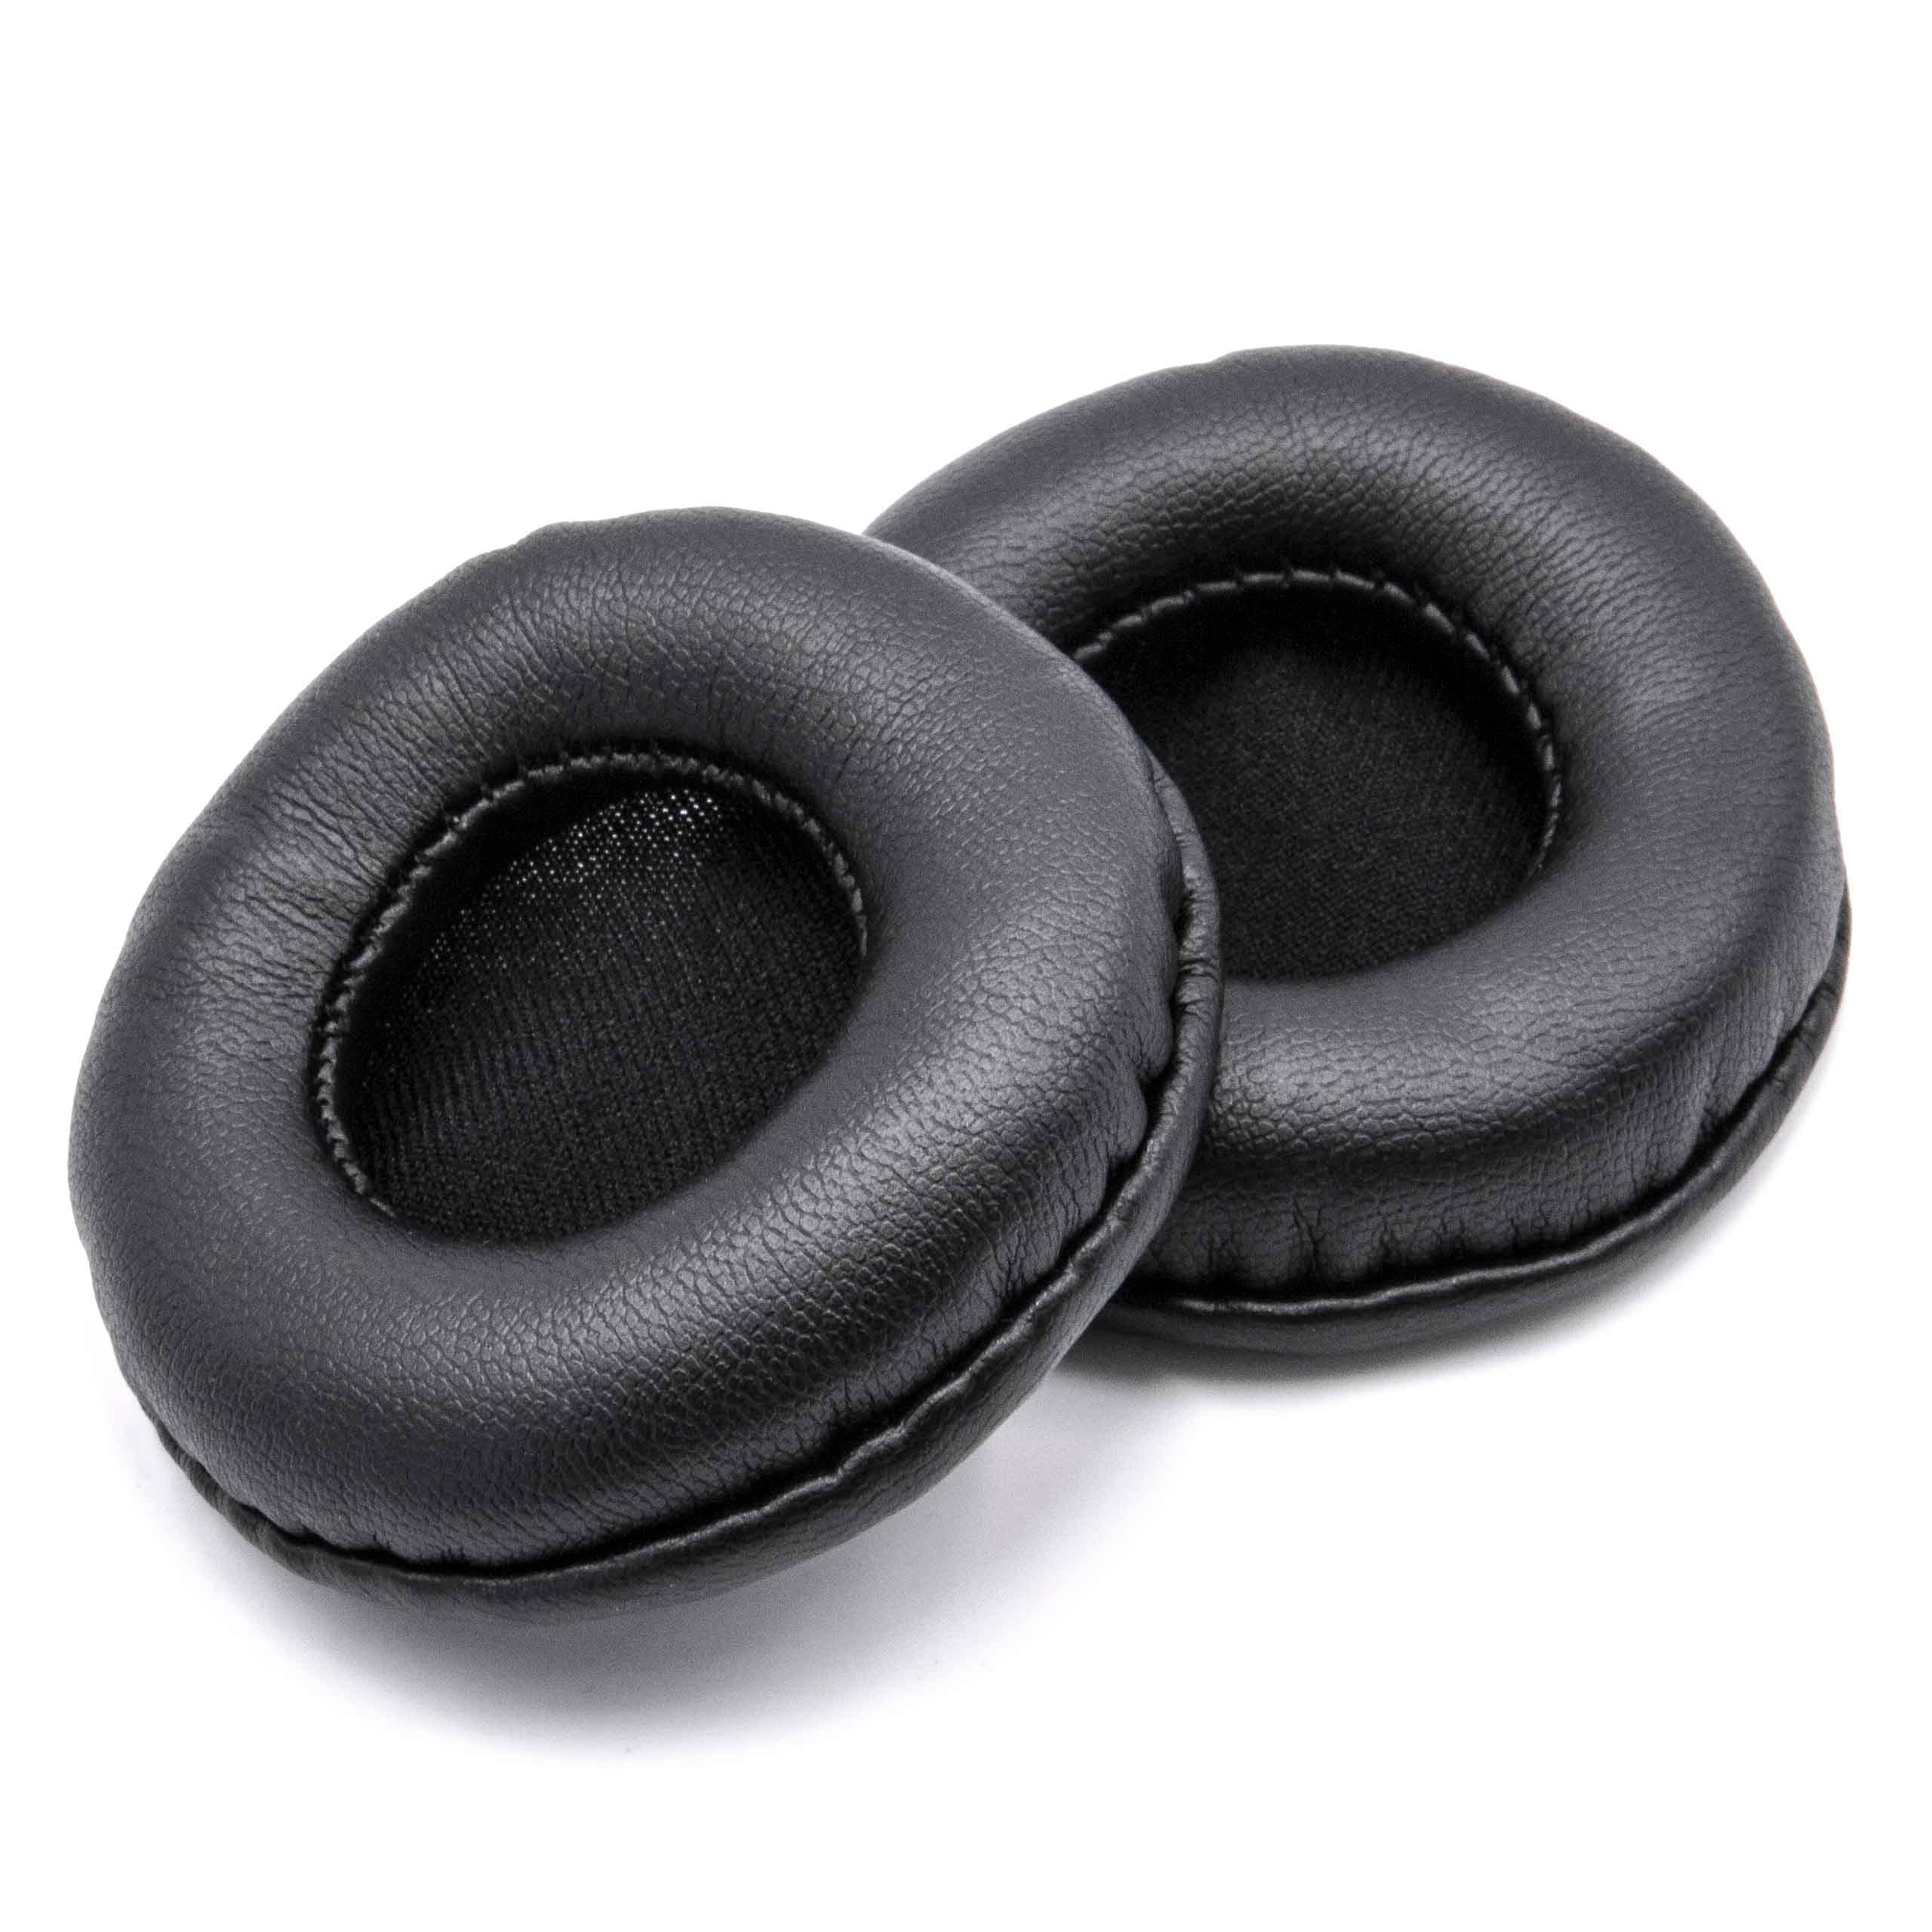 2x Poduszki do słuchawek ATH / słuchawek z nausznikami 60 mm / Sony ES55 - pady śr. 60 cm , czarny